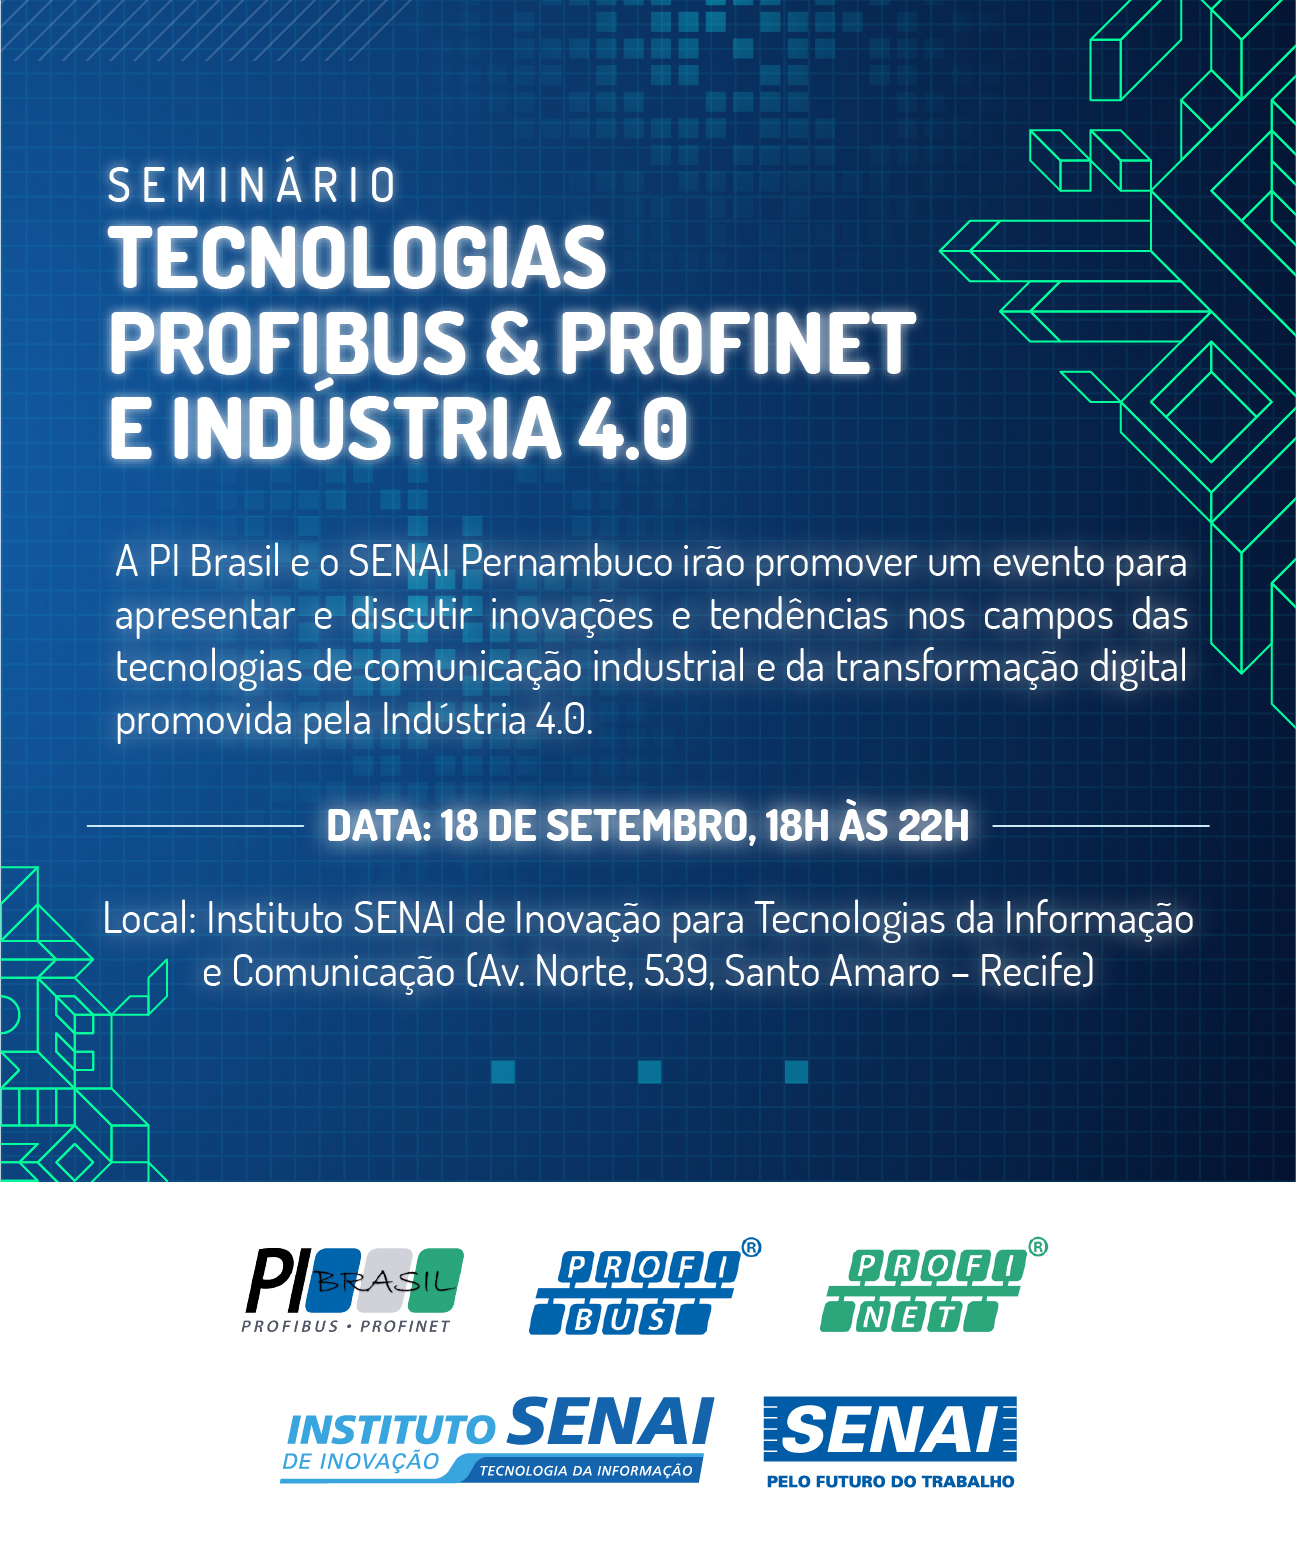 Seminário Tecnologias Profibus & Profinet e Indústria 4.0